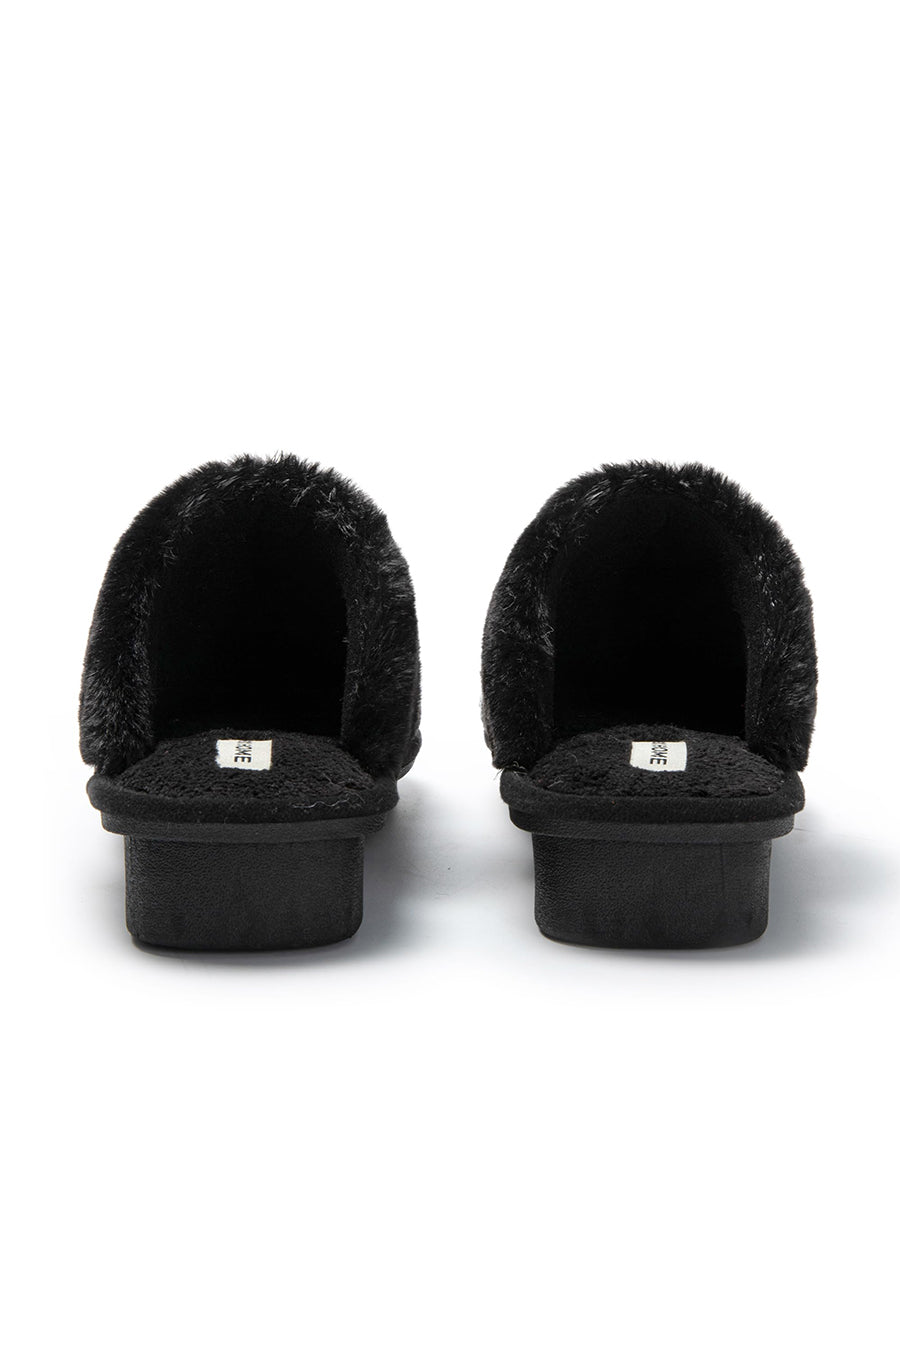 JOMIX Pantofole Donna Invernali Ciabatte Pelose Calde a Pois Tacco Zeppa Accoglienti da Casa Relax Comode MD8570